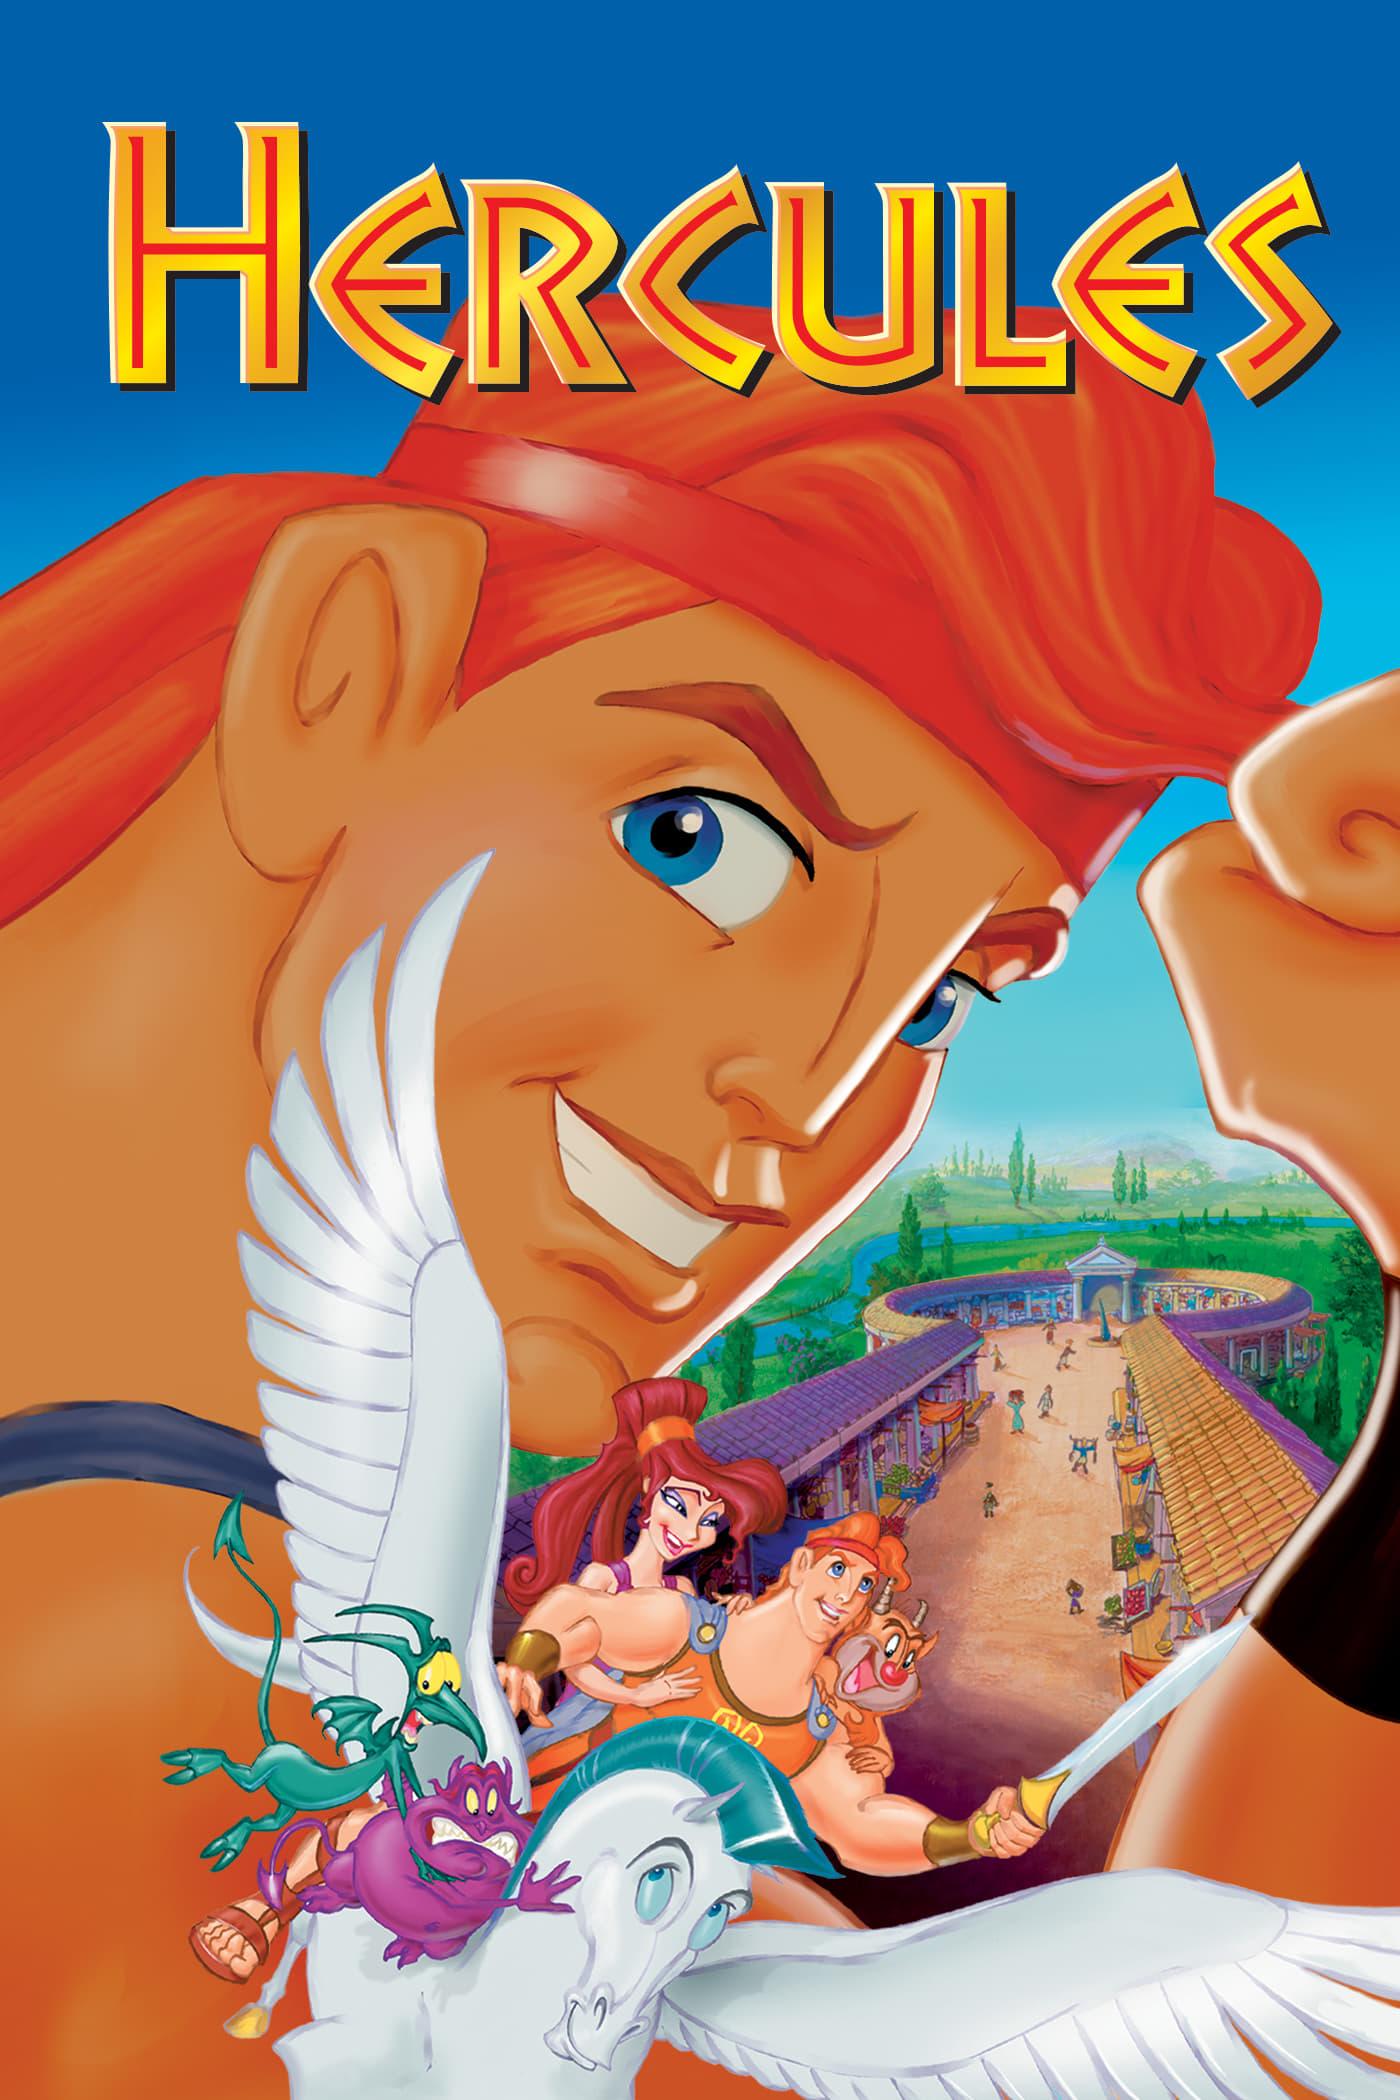 Hercules poster